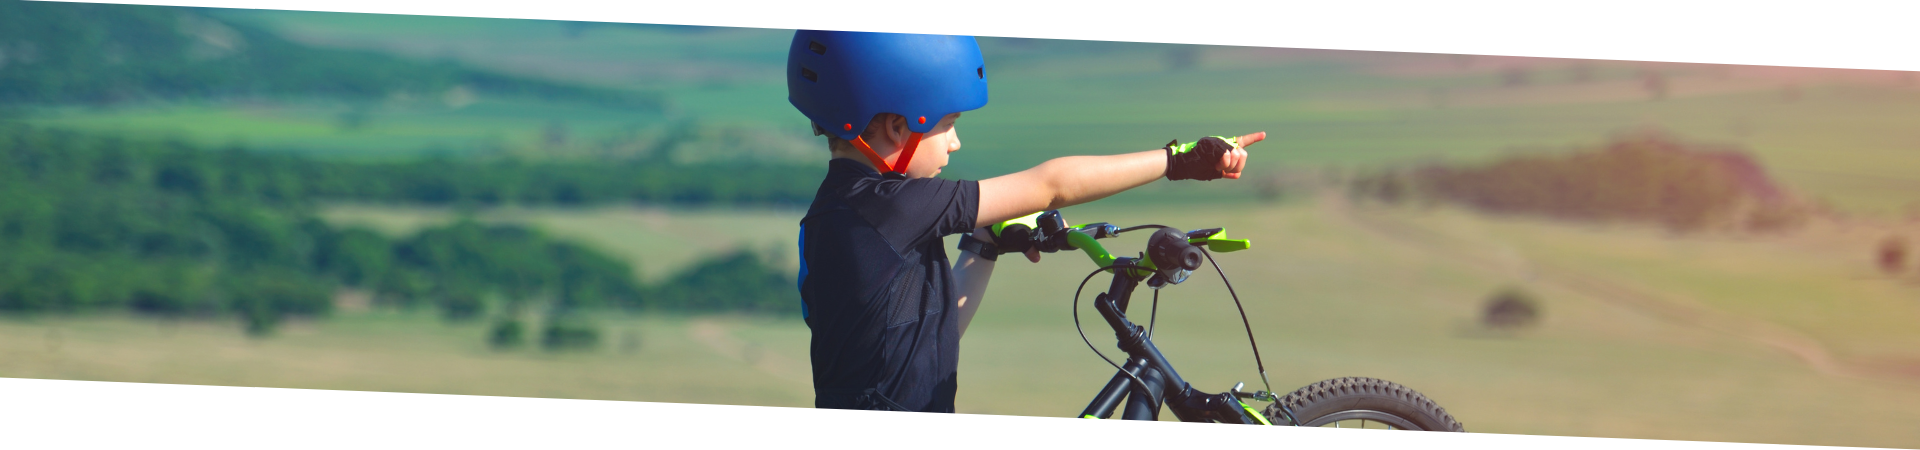 La remorque multisport enfant pour partir à l'aventure en famille - We Cycle